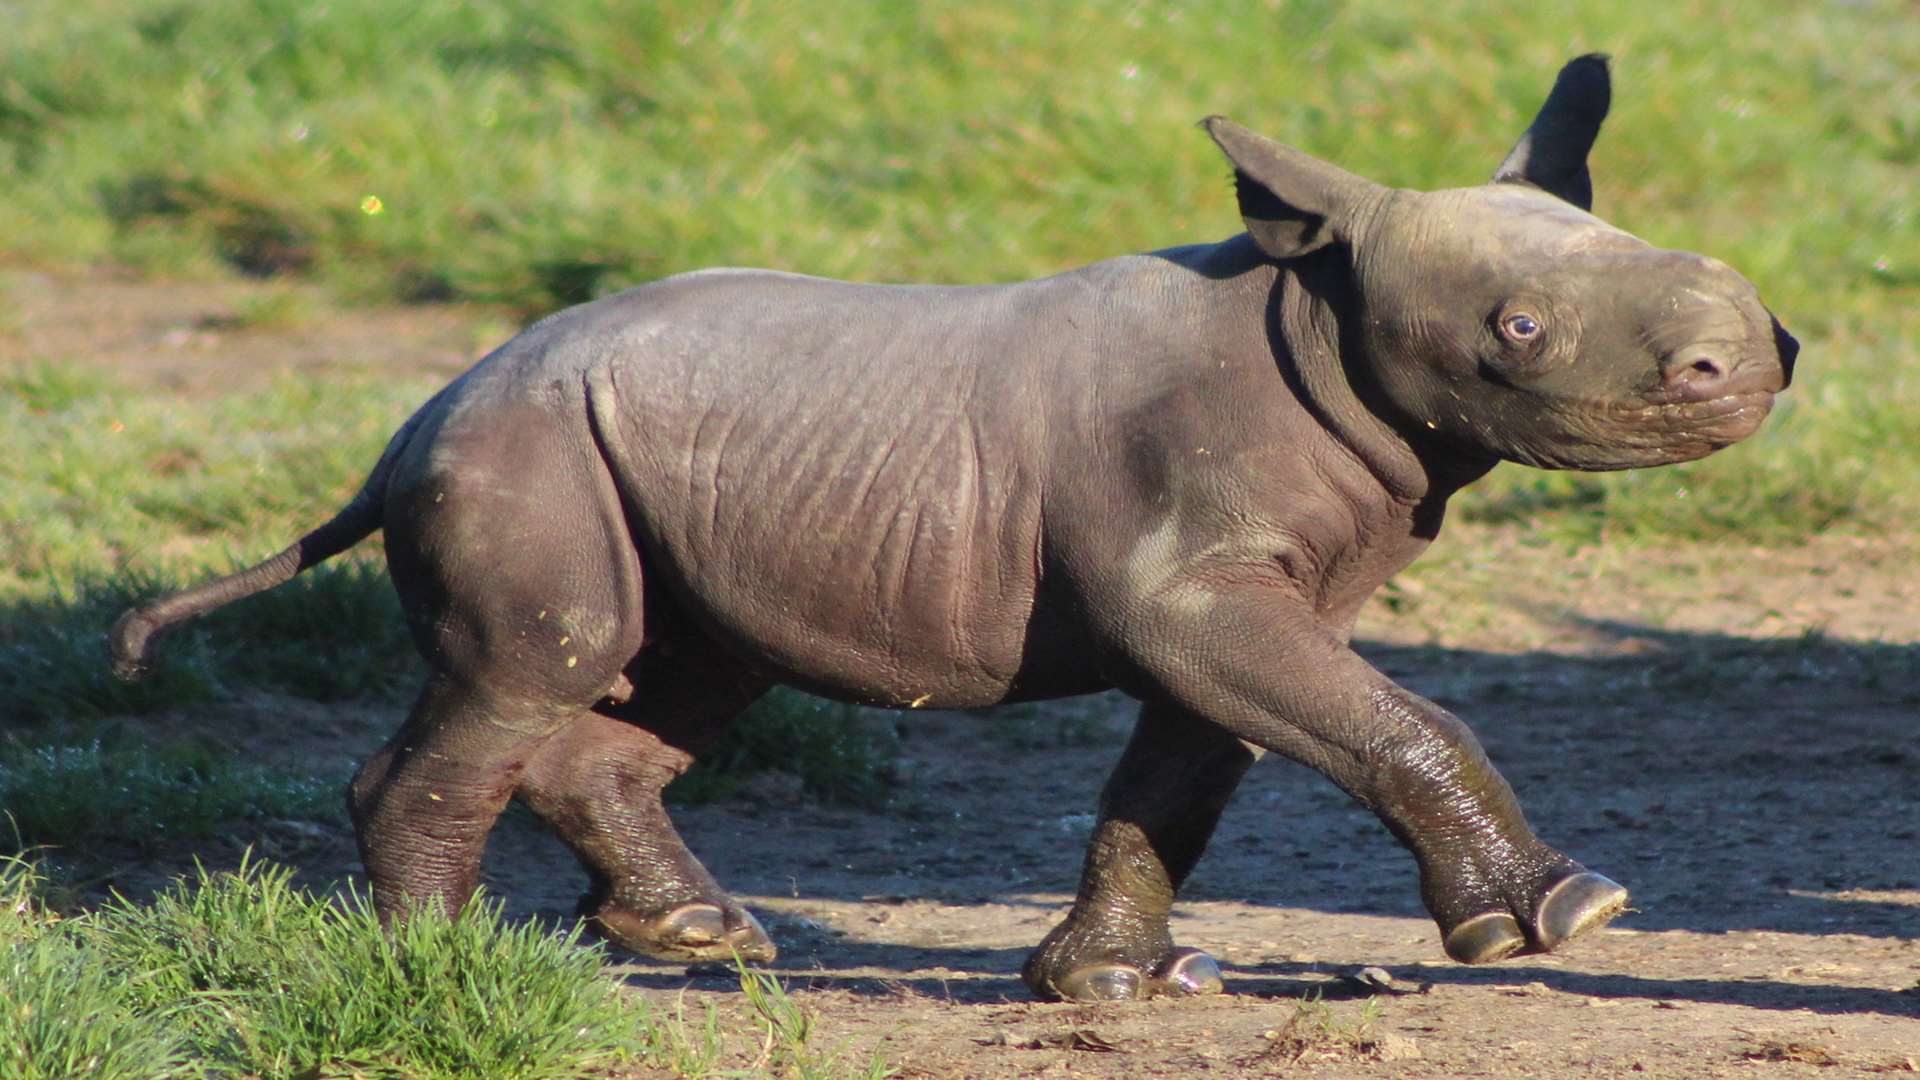 Rhino calf at Howletts